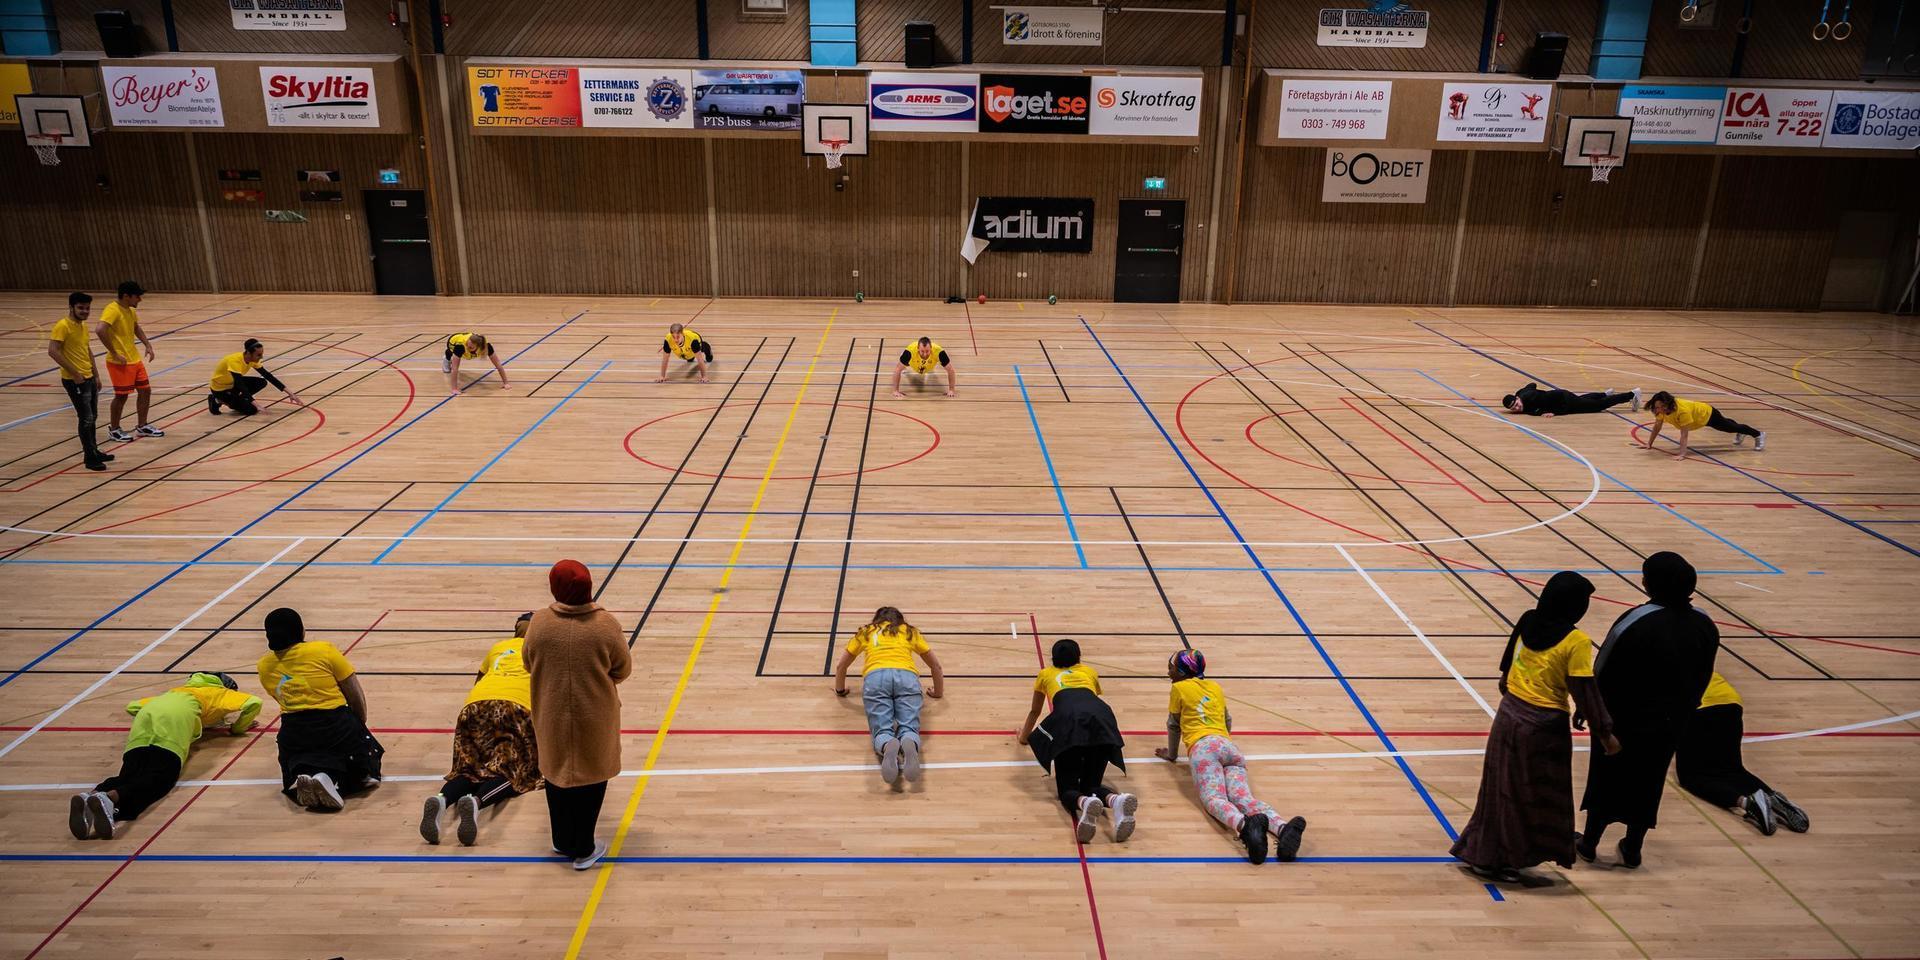 Här i Angered Arena har eleverna på Angeredsgymnasiet sina lektioner. Och hit kom fem spelare från Sävehof på besök för att visa lite handboll och skapa glädje för skolungdomarna. ”Det ger mig mycket att få se hur roligt de har”, säger Sävehofs Vetle Eck Aga.